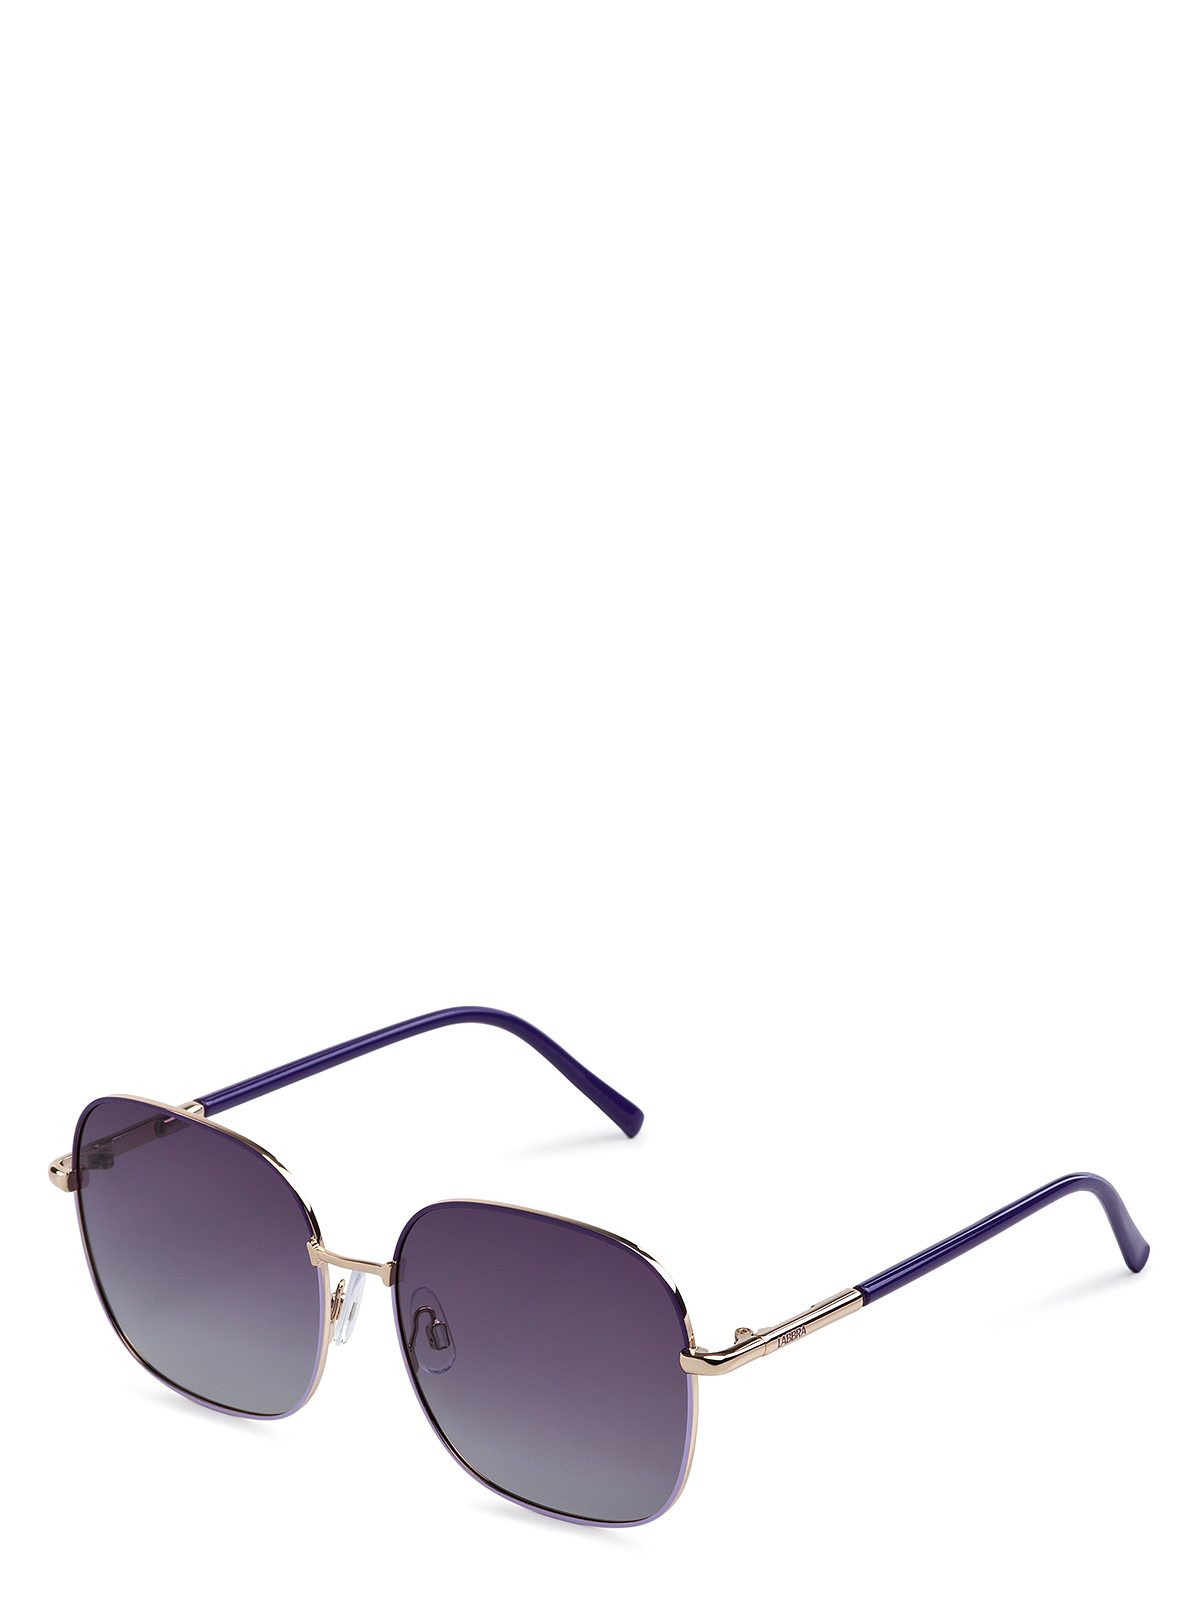 Солнцезащитные очки женские Labbra LB-230008 фиолетовые